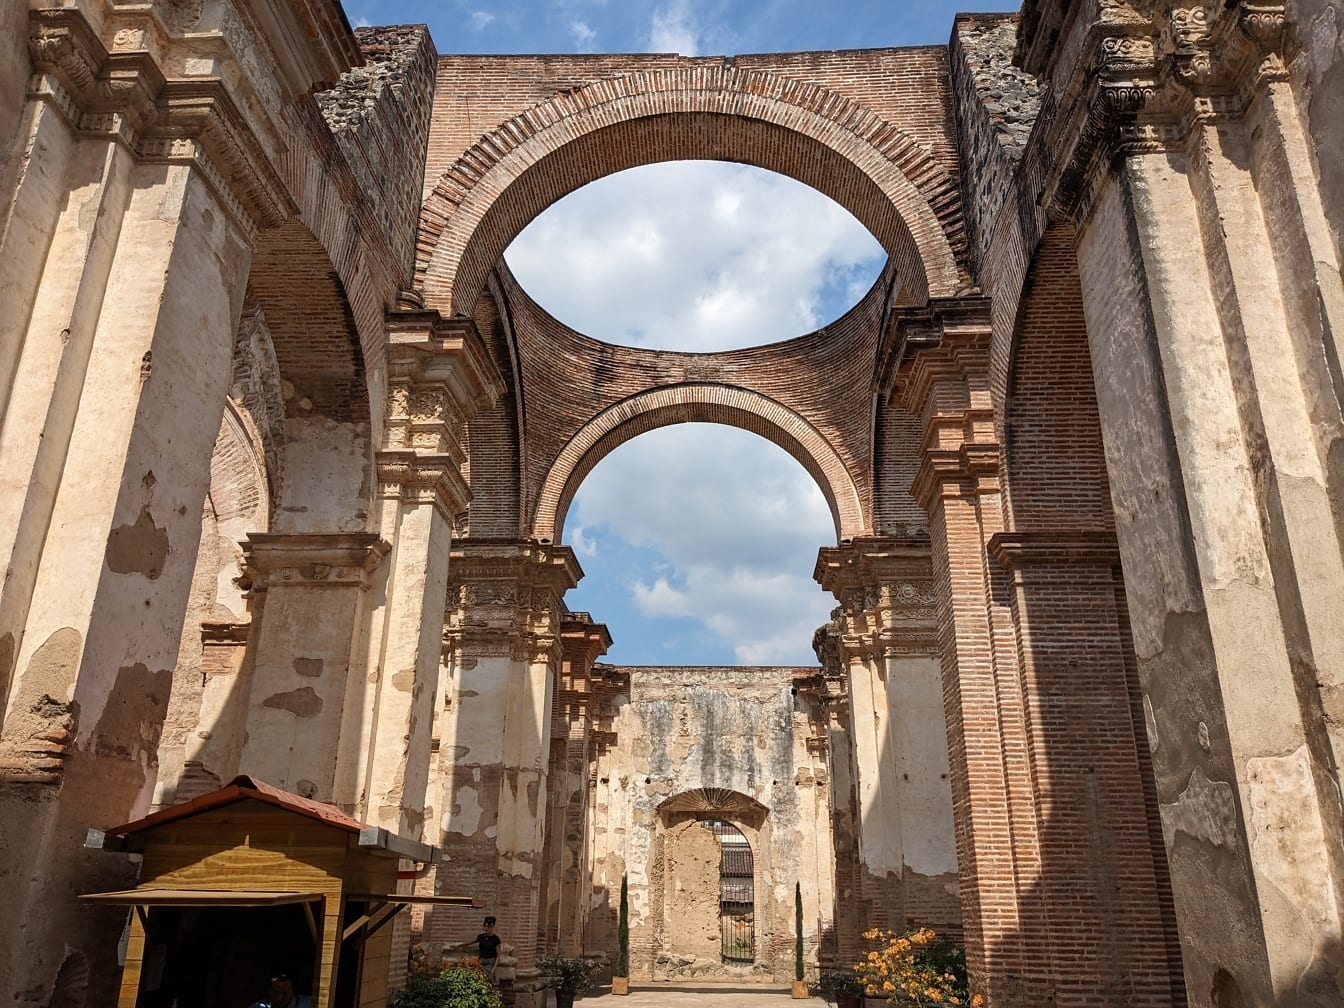 Ερείπια καθεδρικού ναού με καμάρες σε αποικιακό αρχιτεκτονικό στυλ στην Antiqua στη Γουατεμάλα